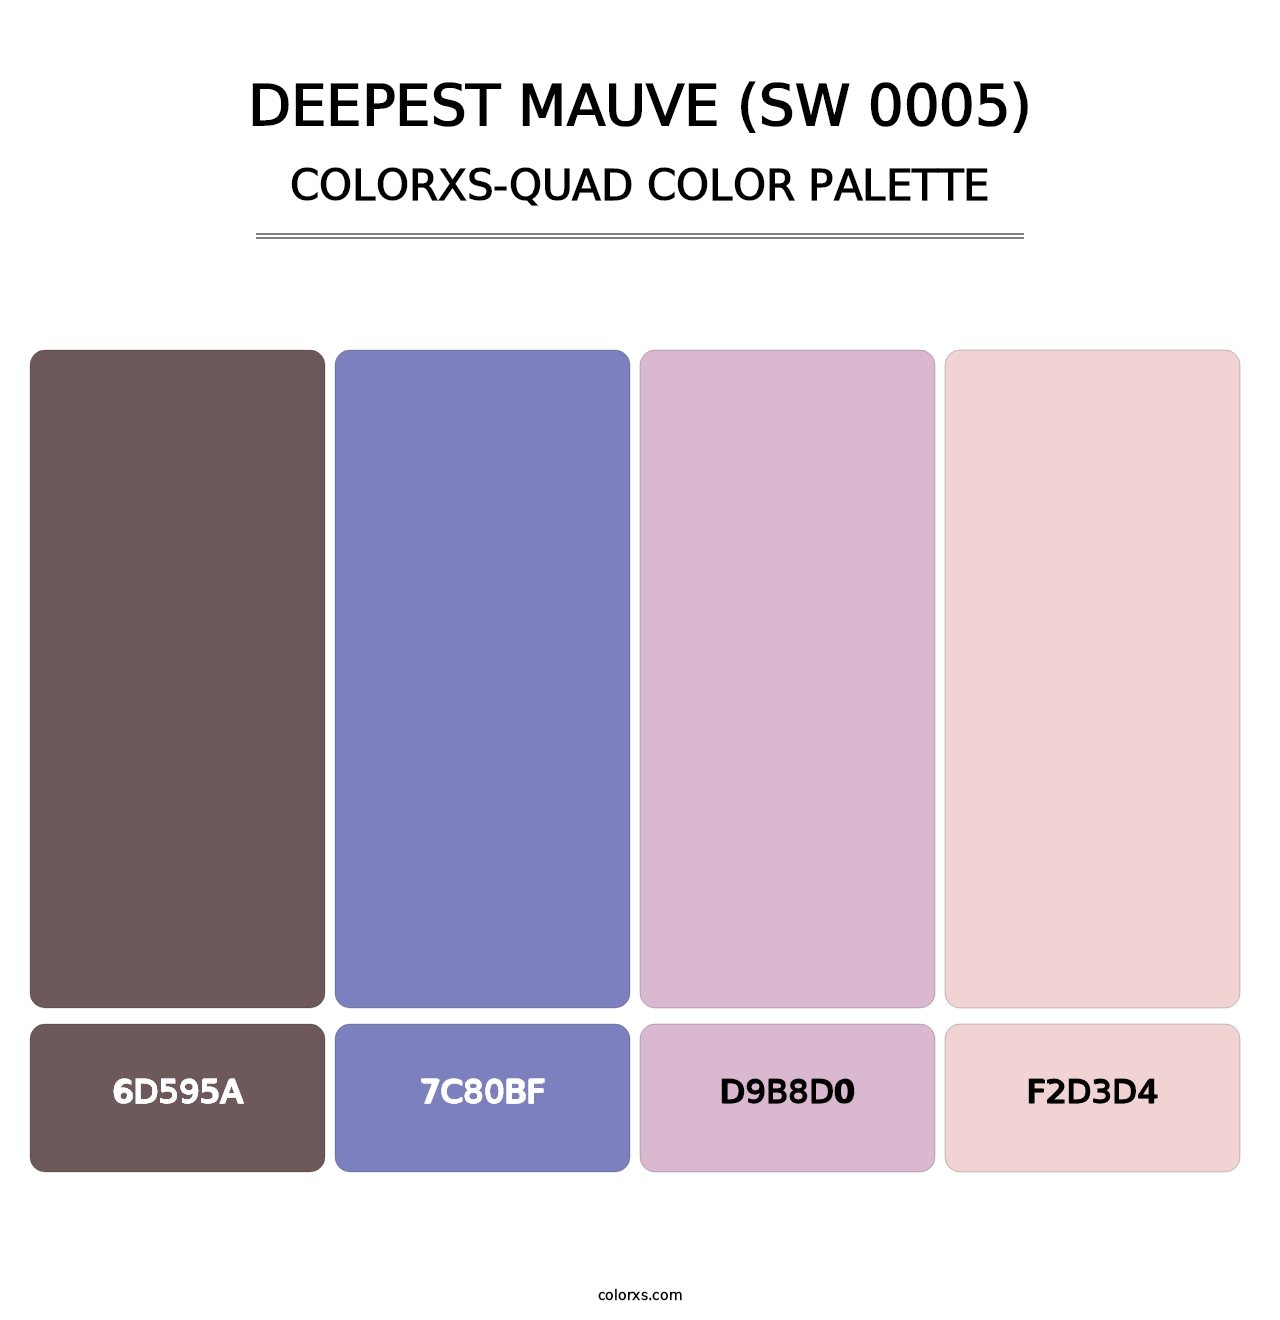 Deepest Mauve (SW 0005) - Colorxs Quad Palette